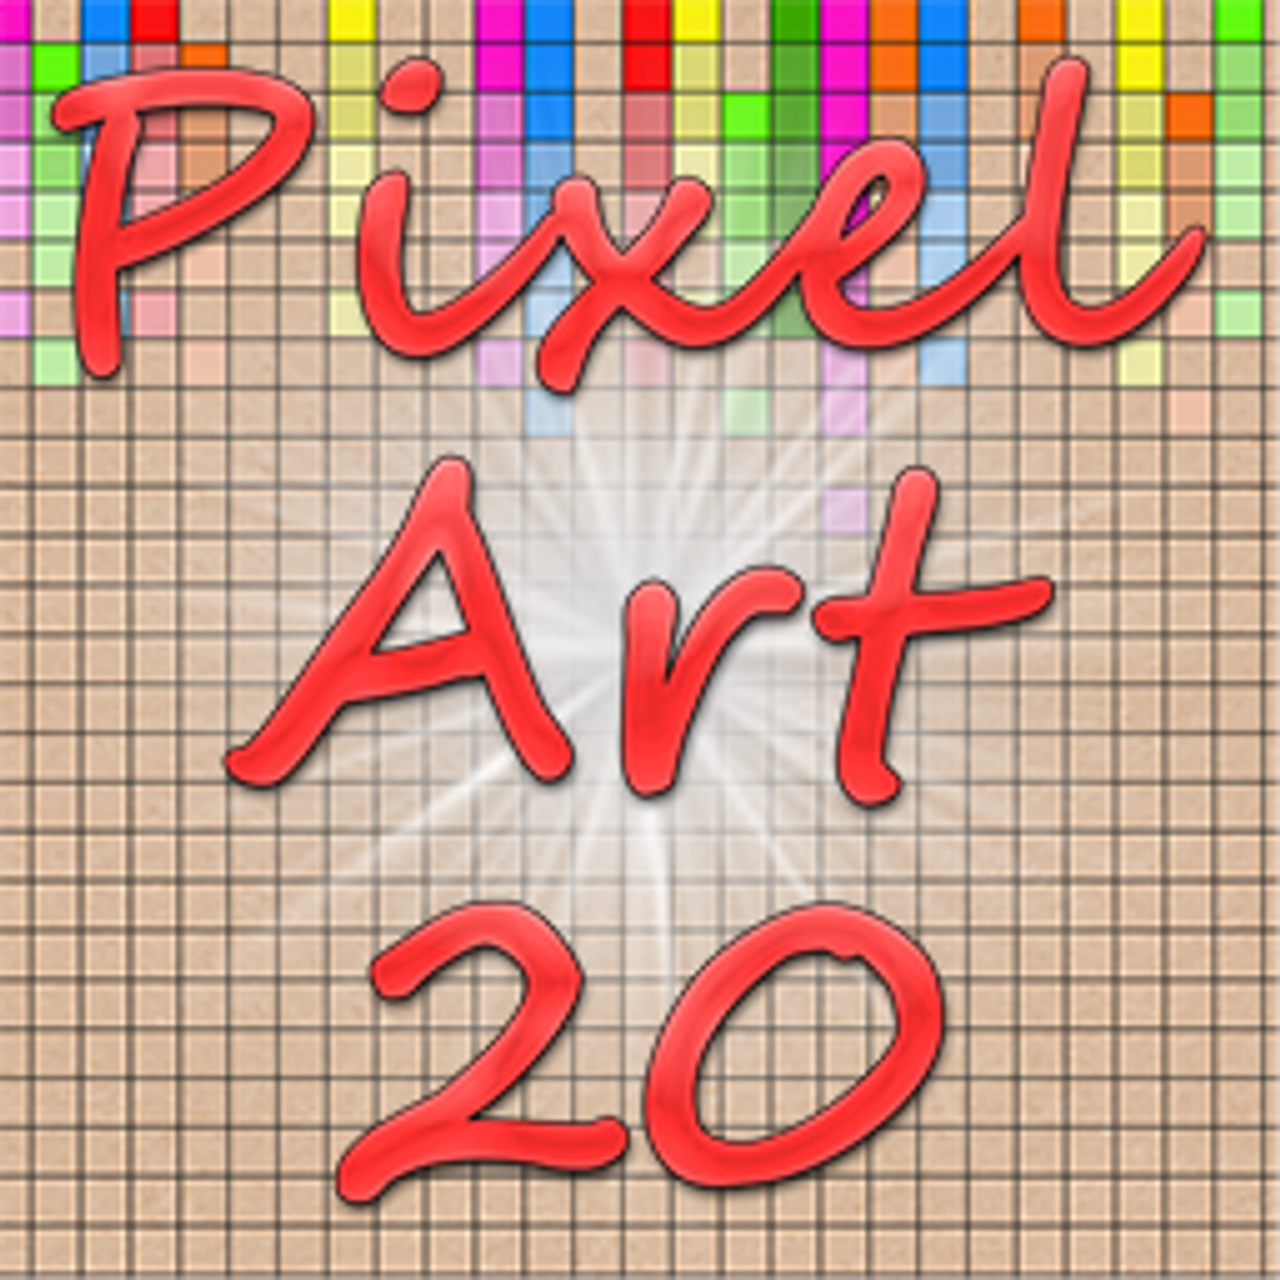 Pixel Art 20